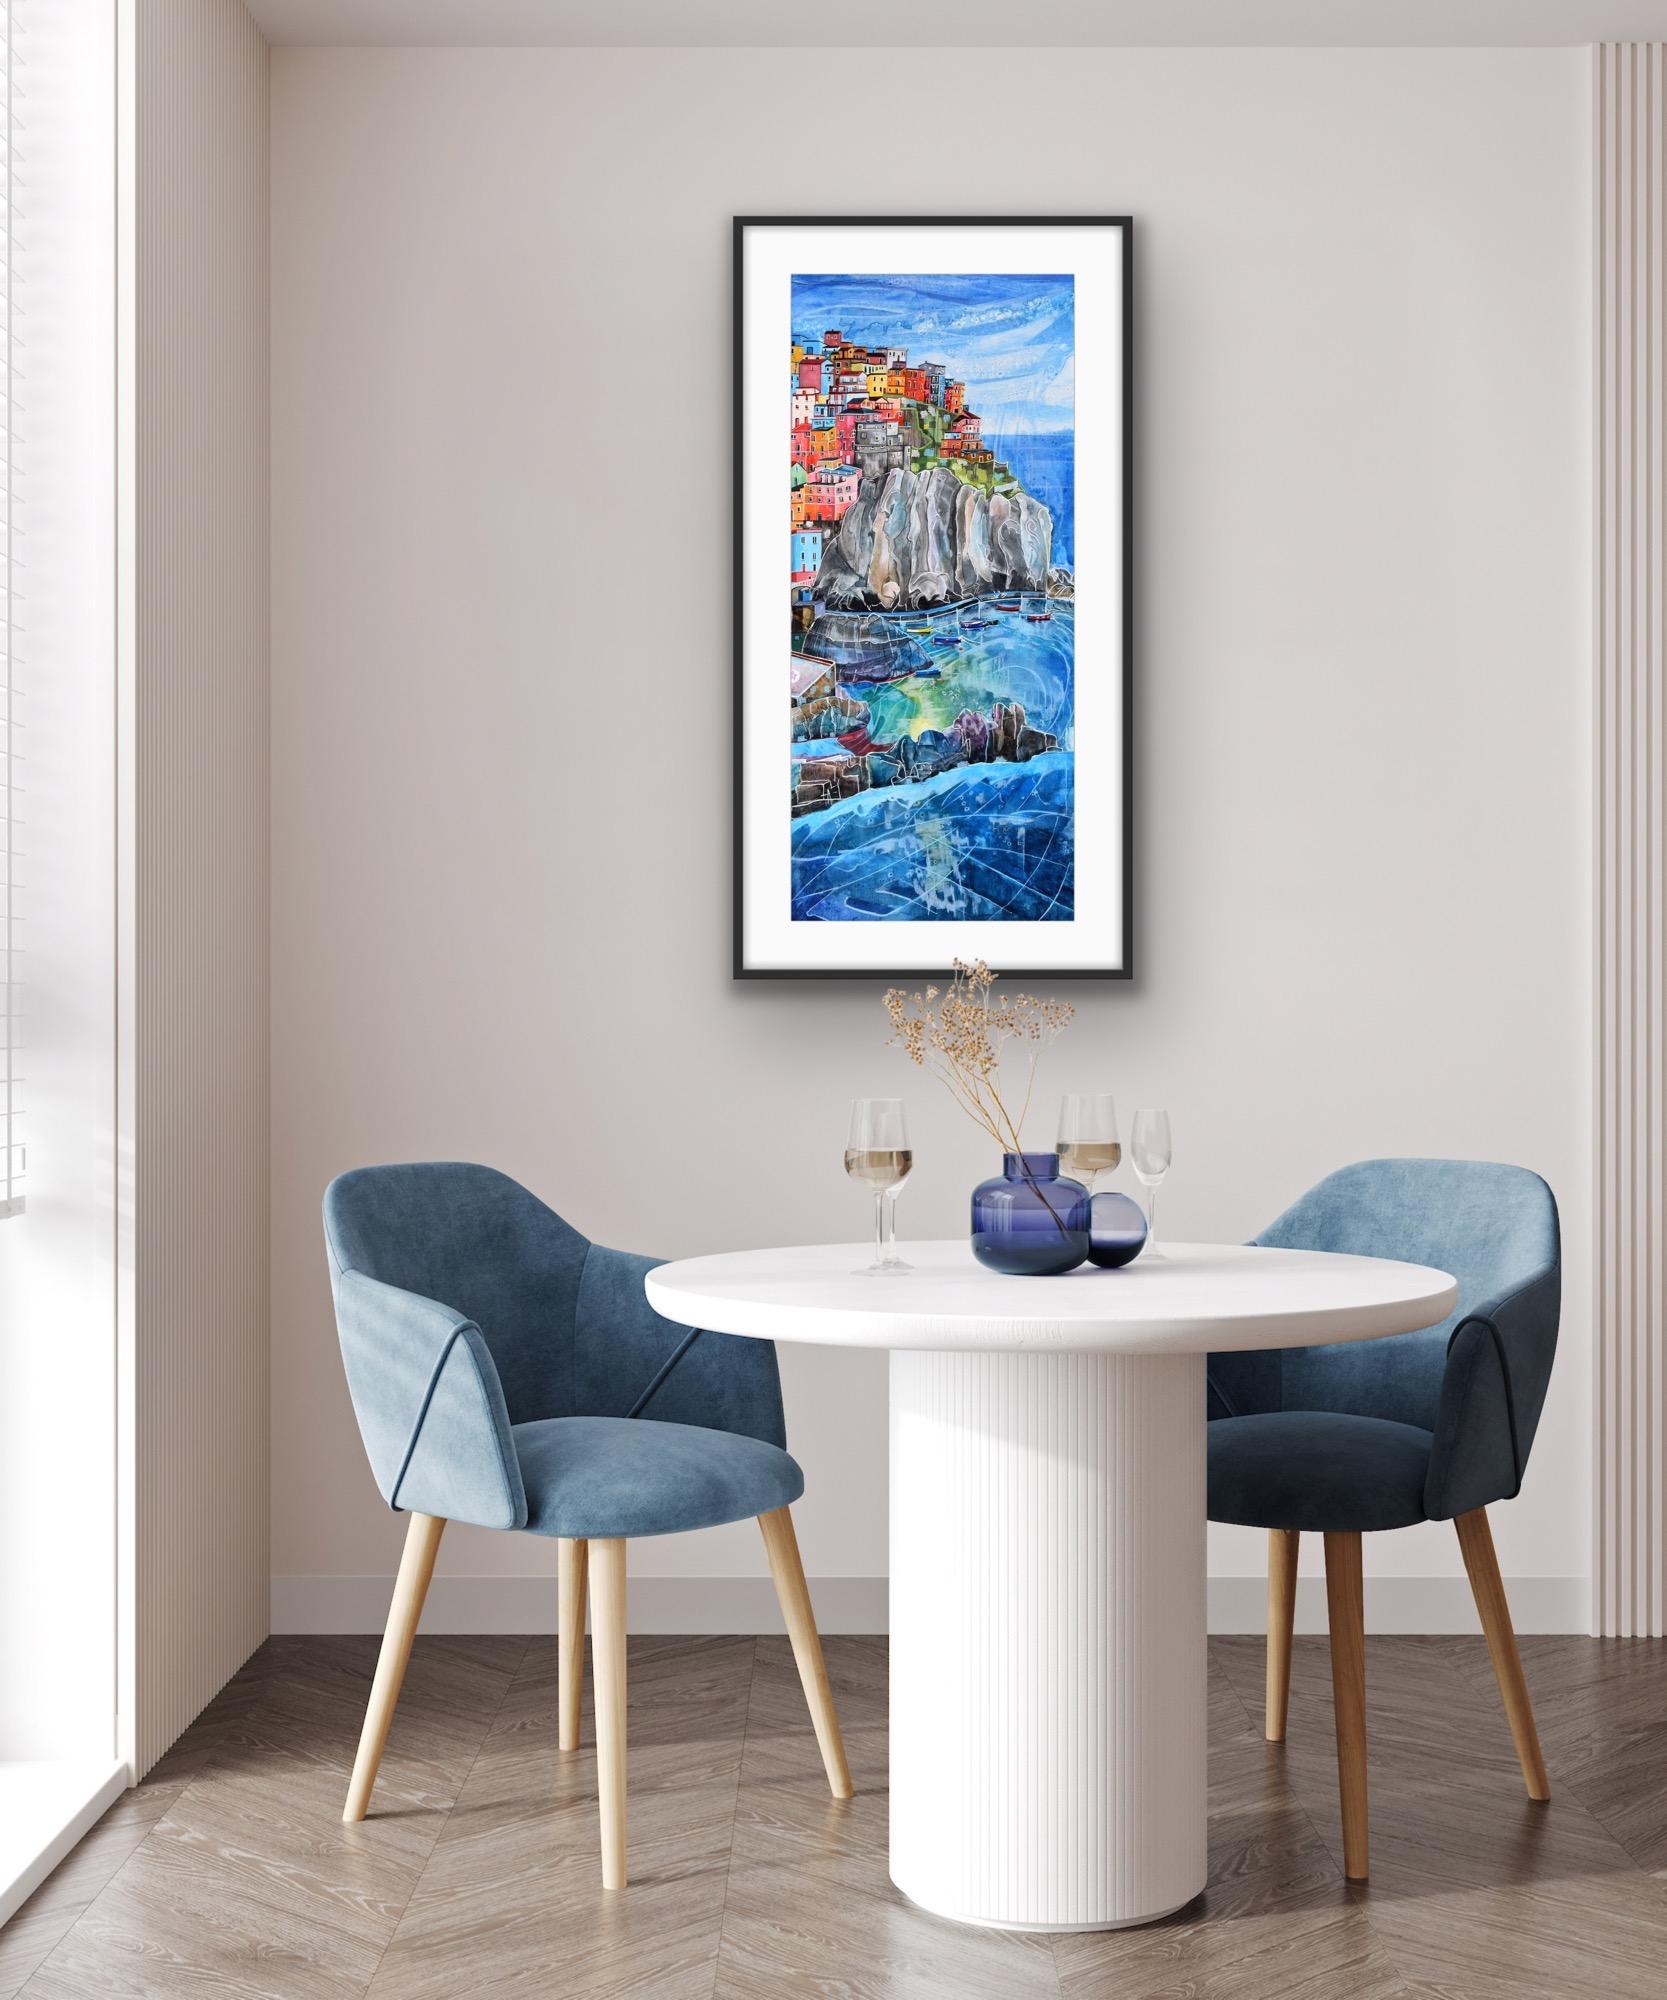 Manarola, Italy, Italian Coastal Art, Seascape Painting, Manarola Art - Print by Anya Simmons